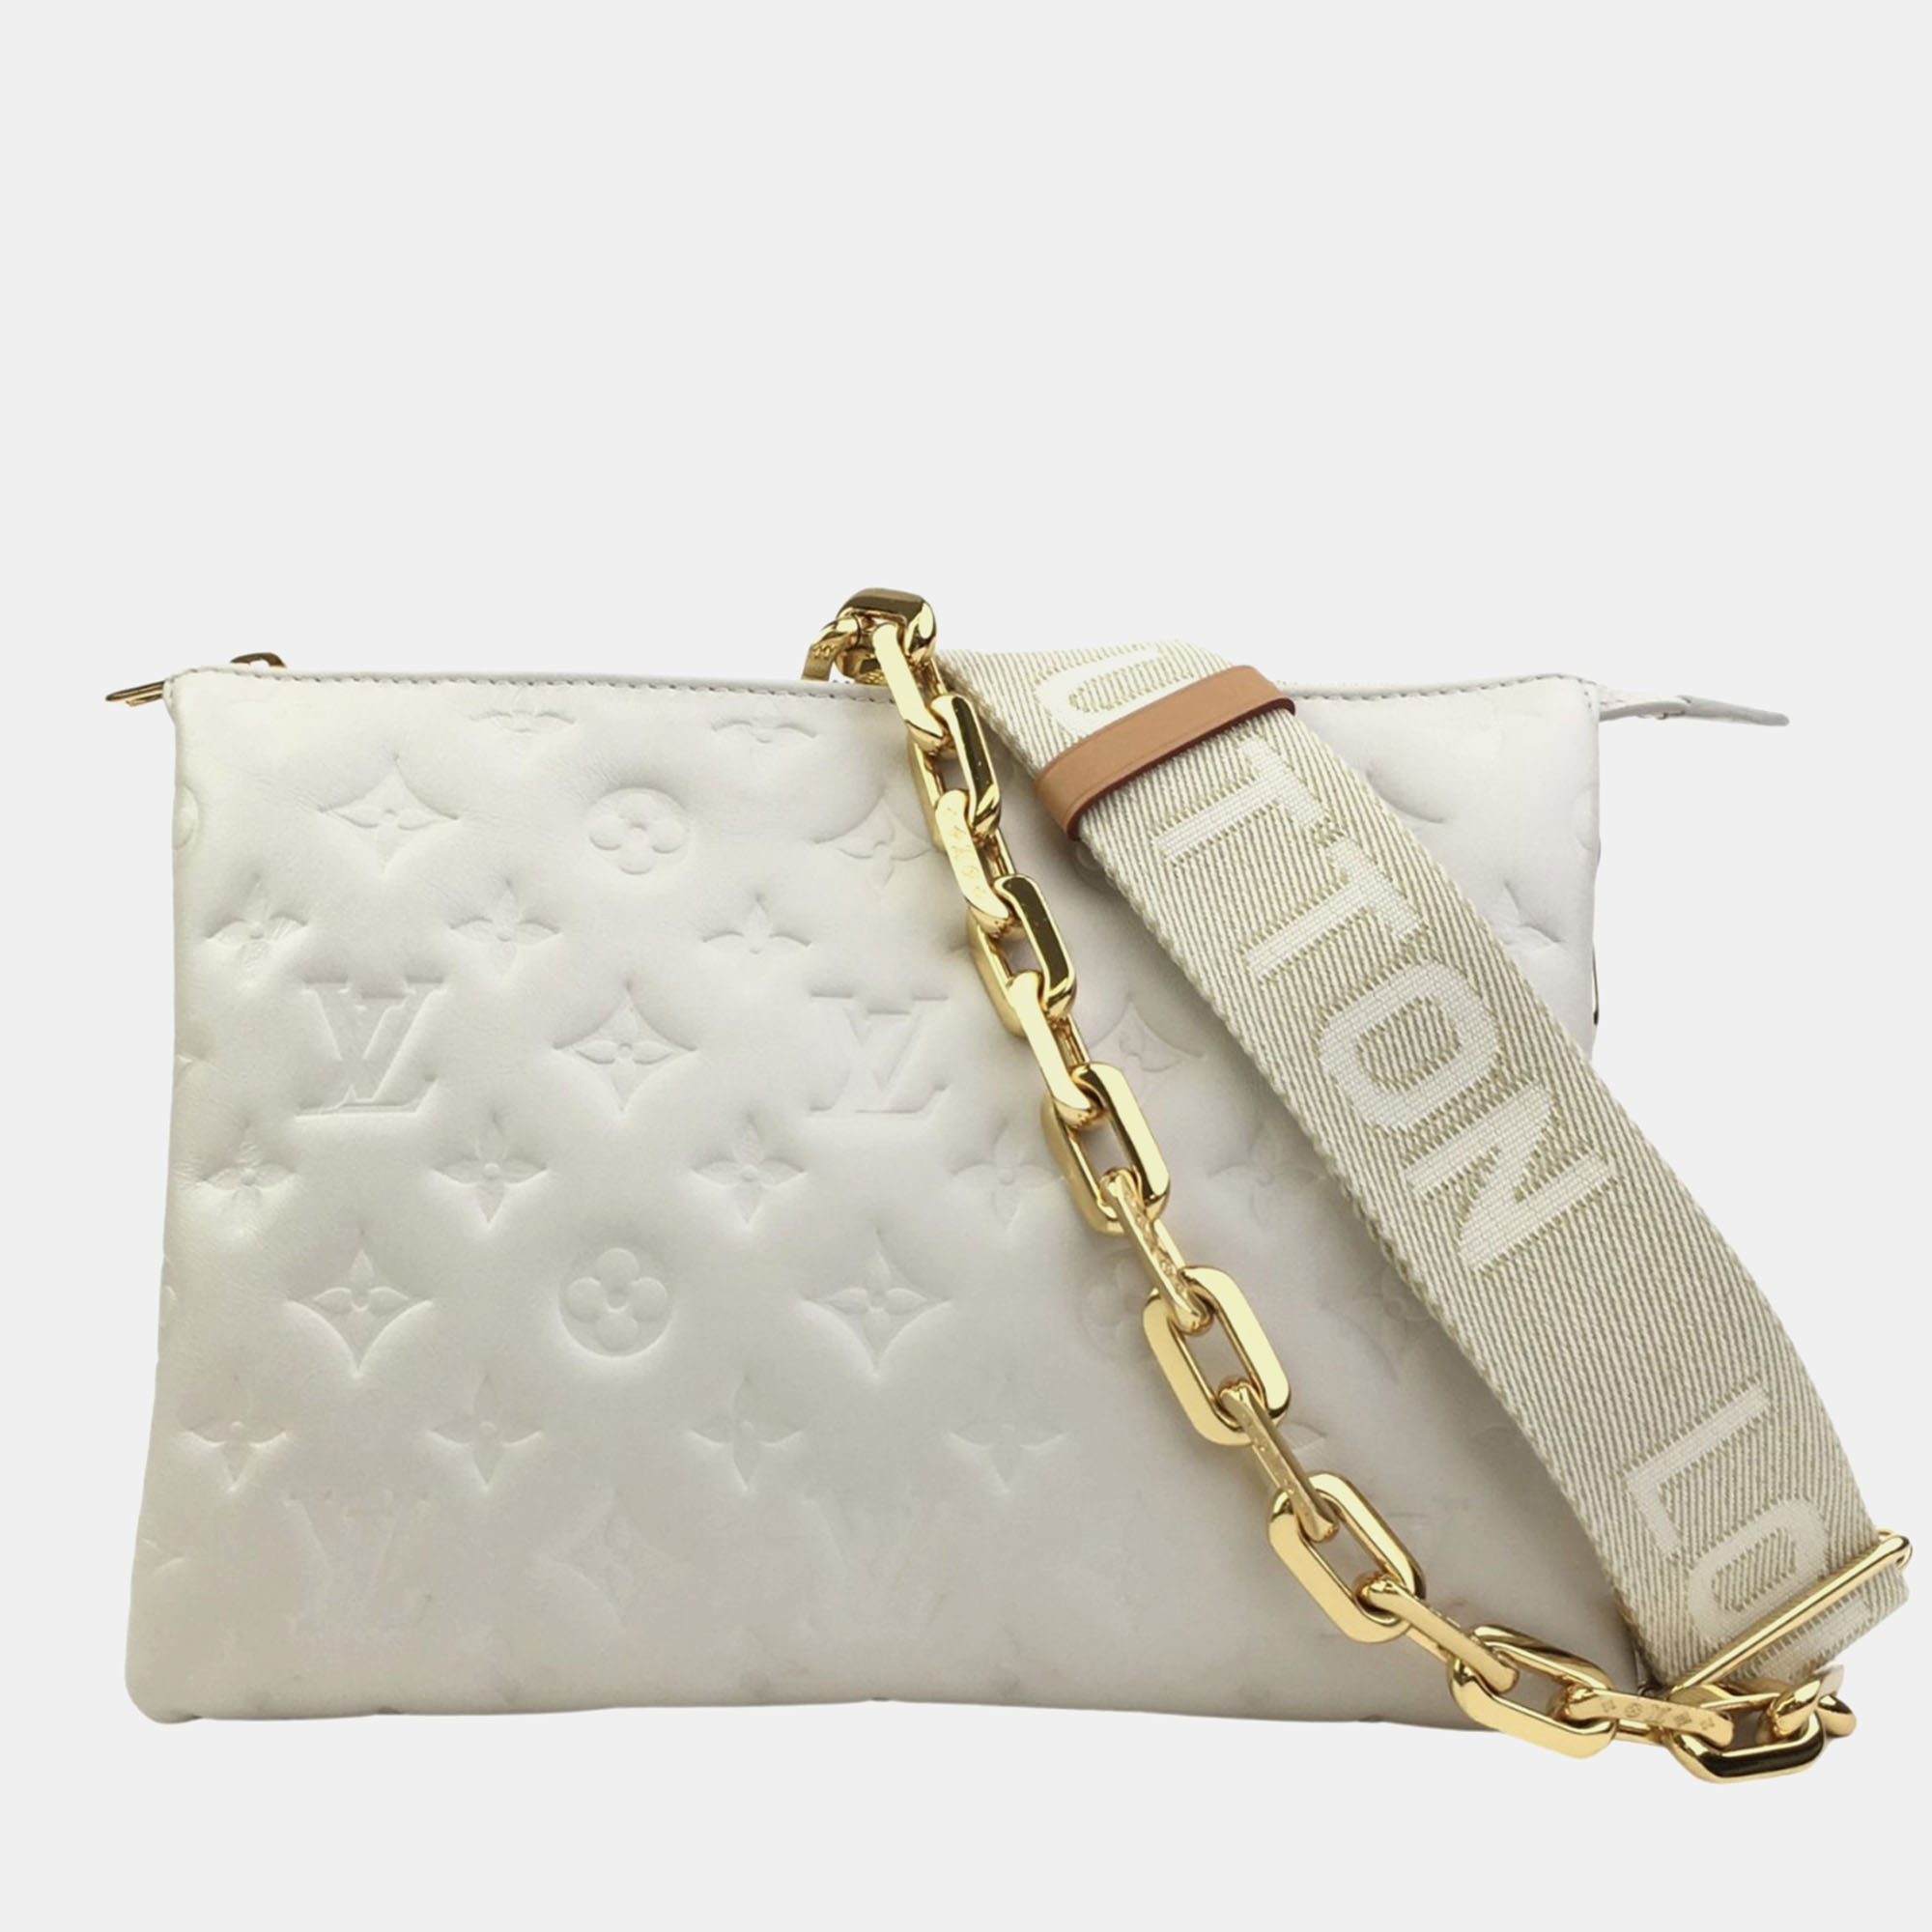 Louis vuitton cream monogram leather coussin pm shoulder bag